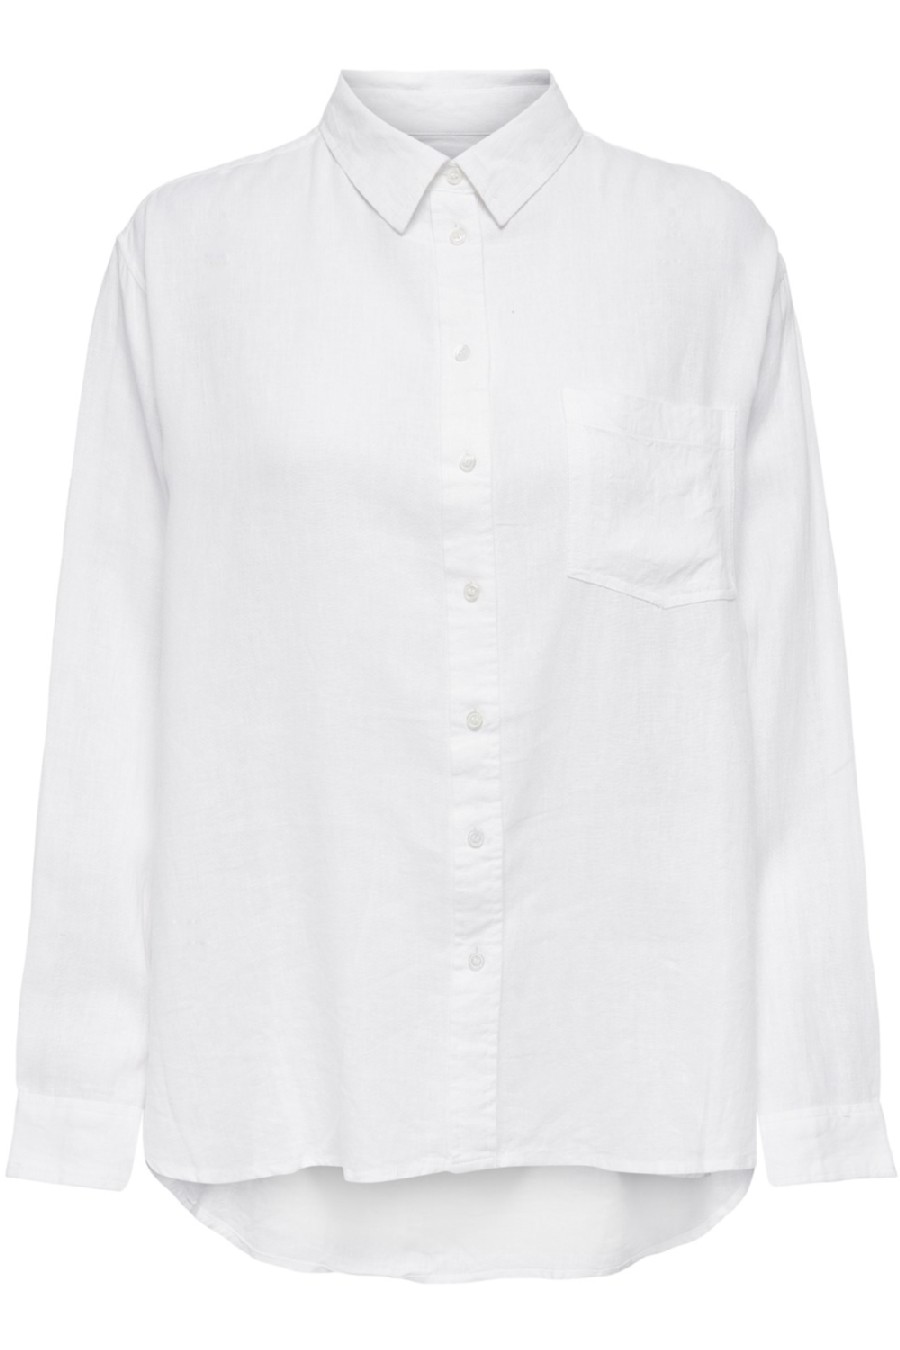 Marškiniai ONLY 15259585-Bright-White